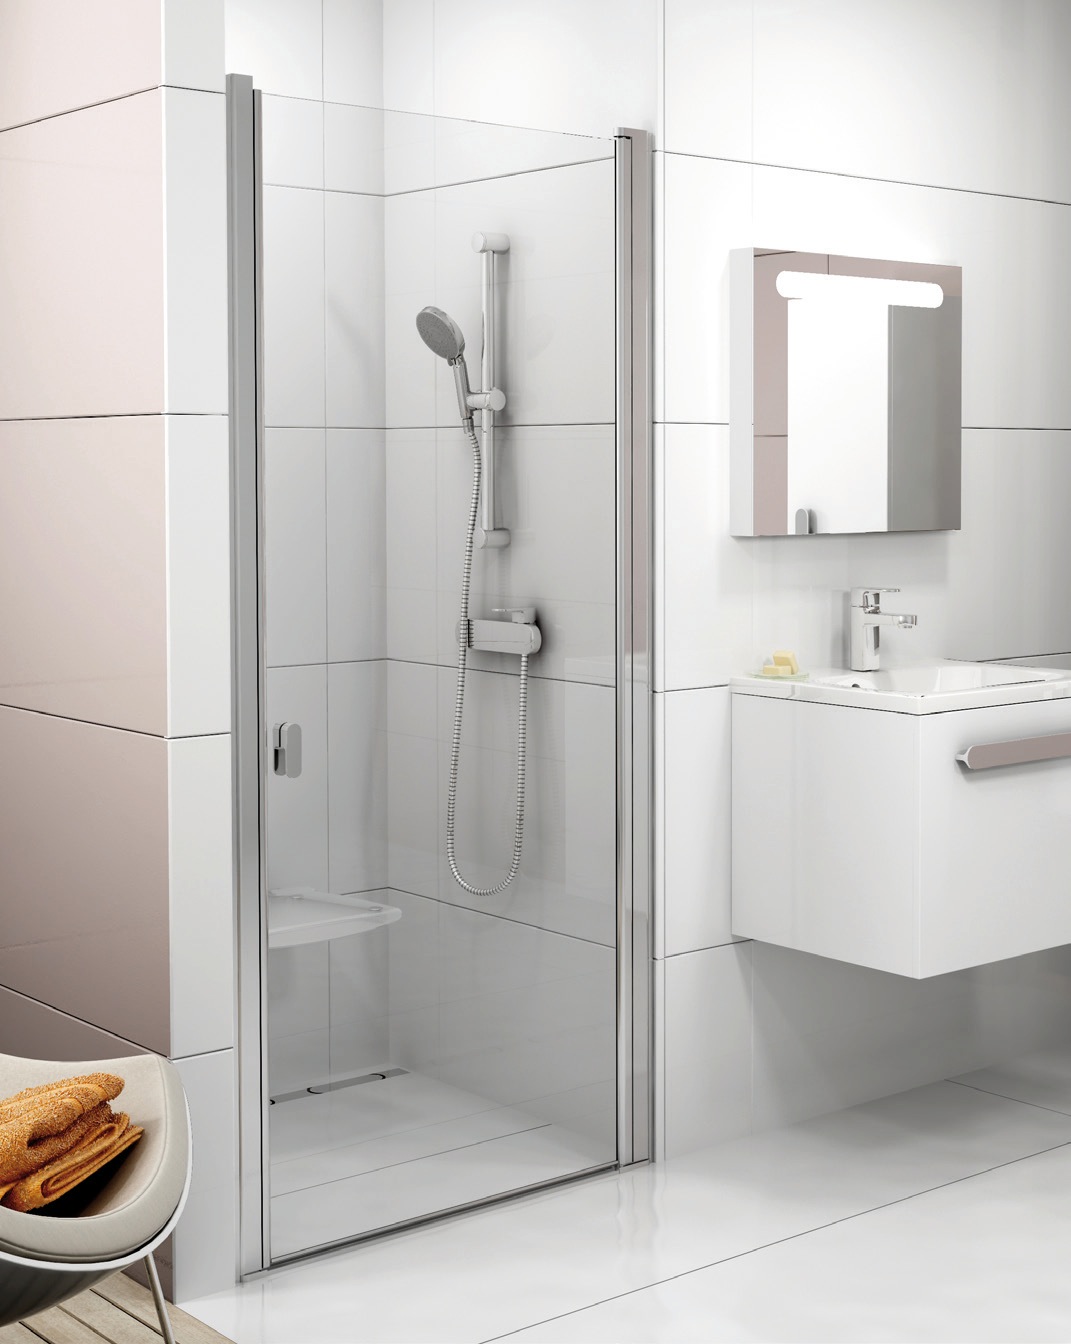 Fürdőszobafelújítás előtt áll? Bármikor kialakíthatja az álom fürdőszobát a tökéletes káddal, zuhanykabinnal, mosdóval, esetleg wc-vel.